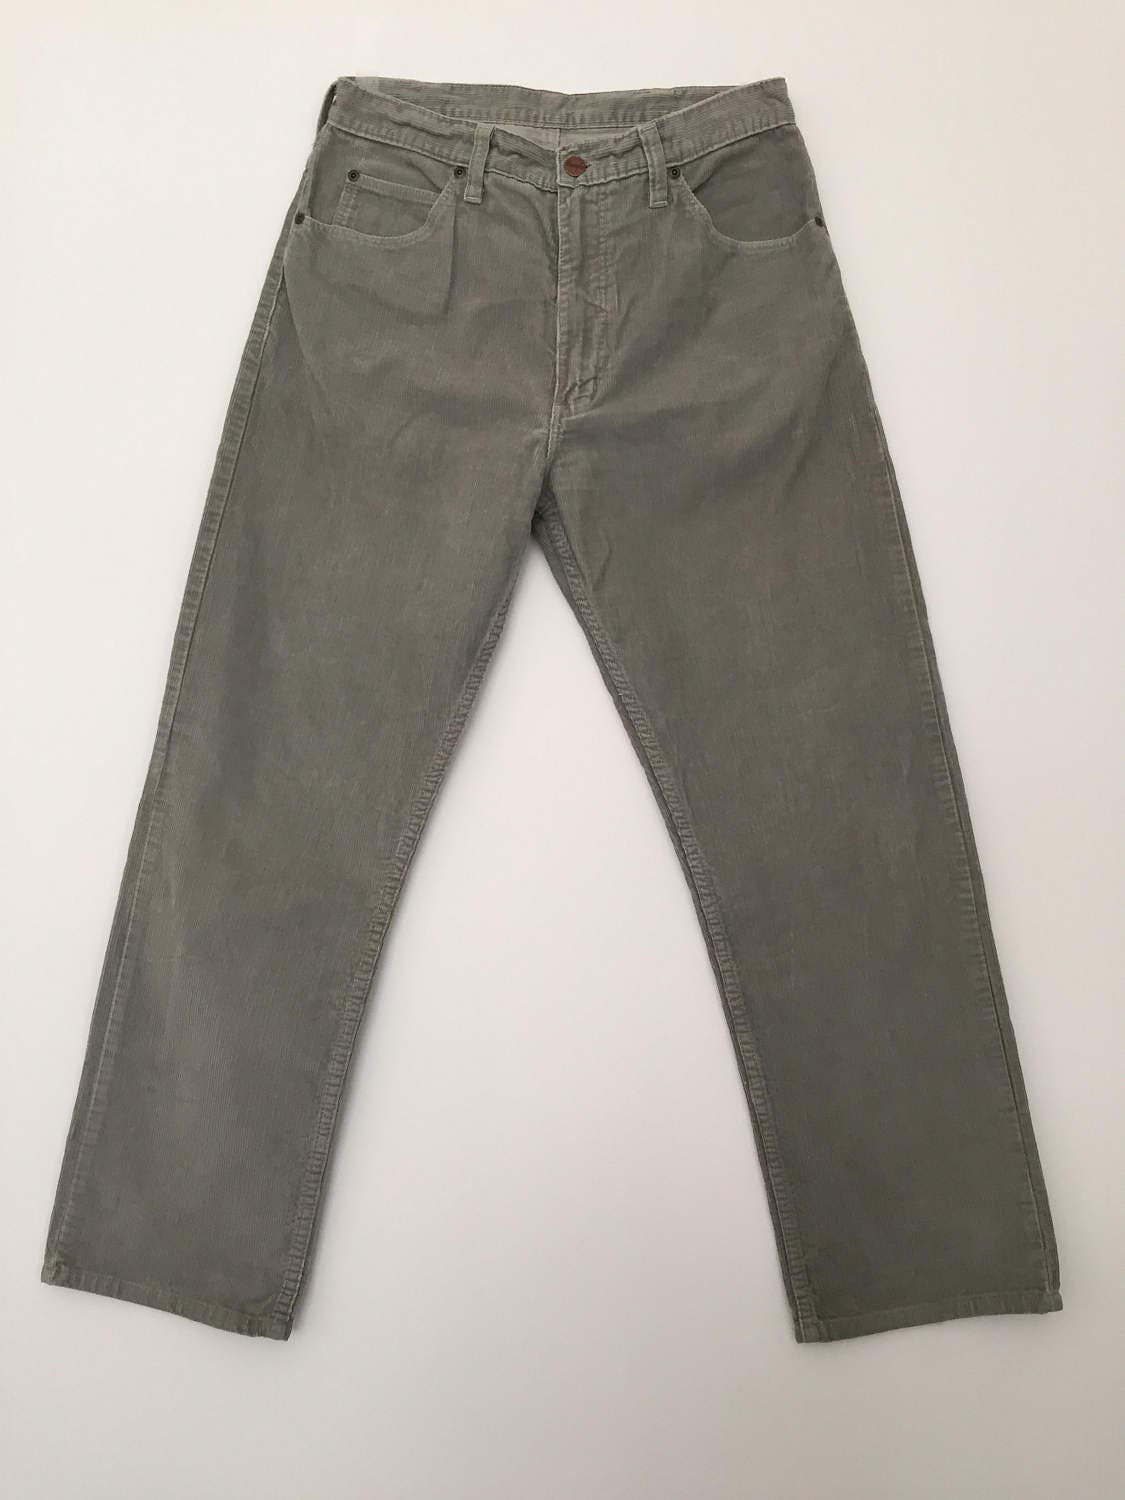 Vintage Wrangler / corduroy pants / high waisted / wrangler